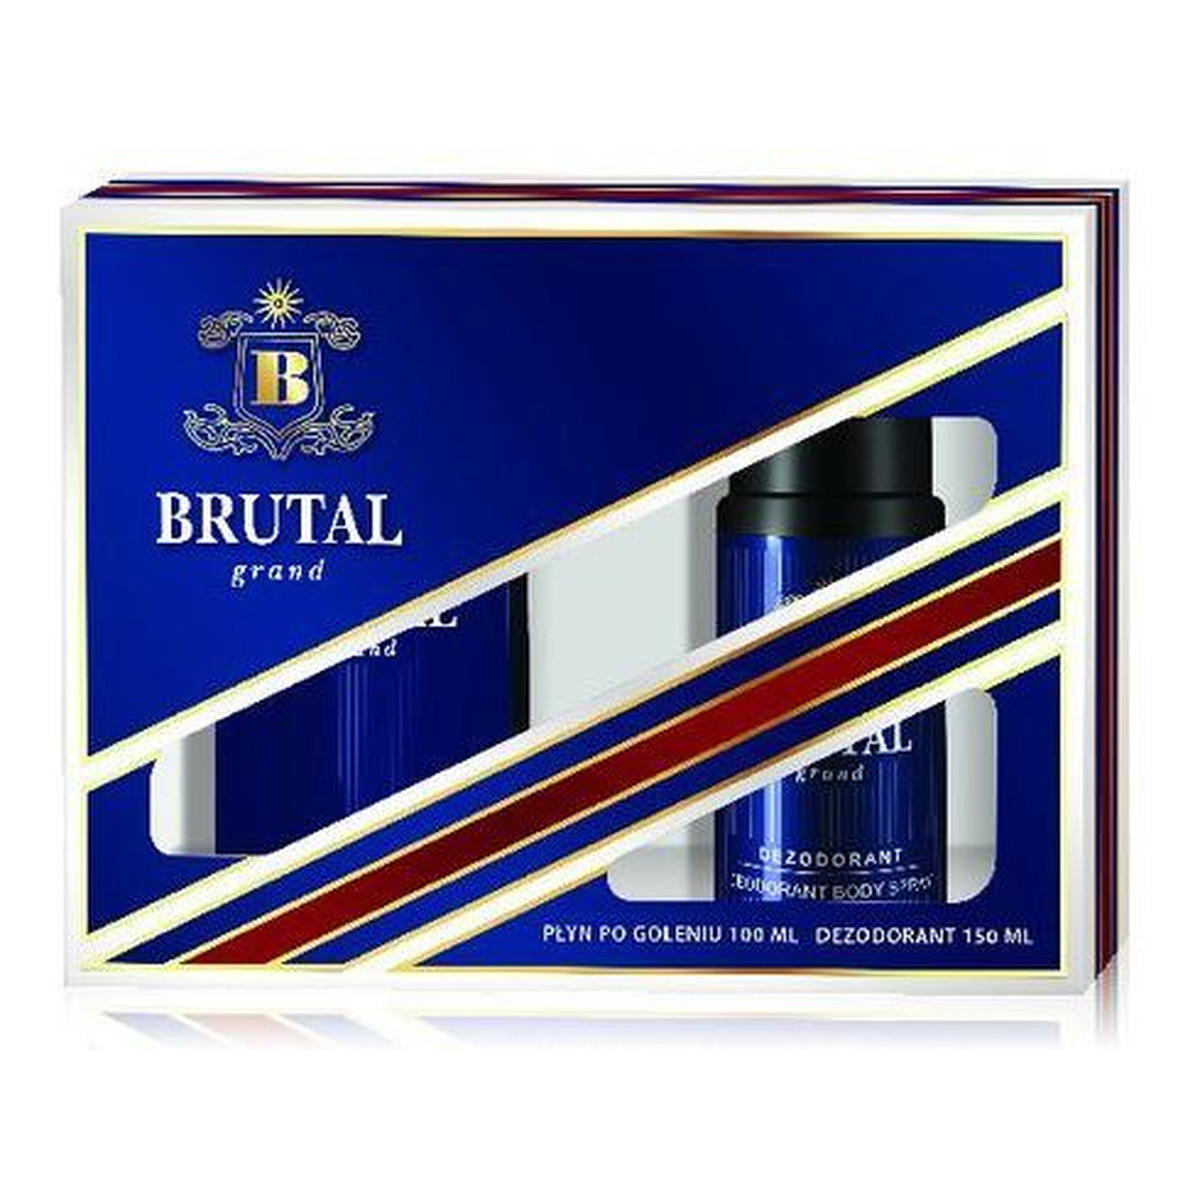 Brutal Grand zestaw prezentowy (płyn po goleniu 100ml + dezodorant 150ml) 150ml